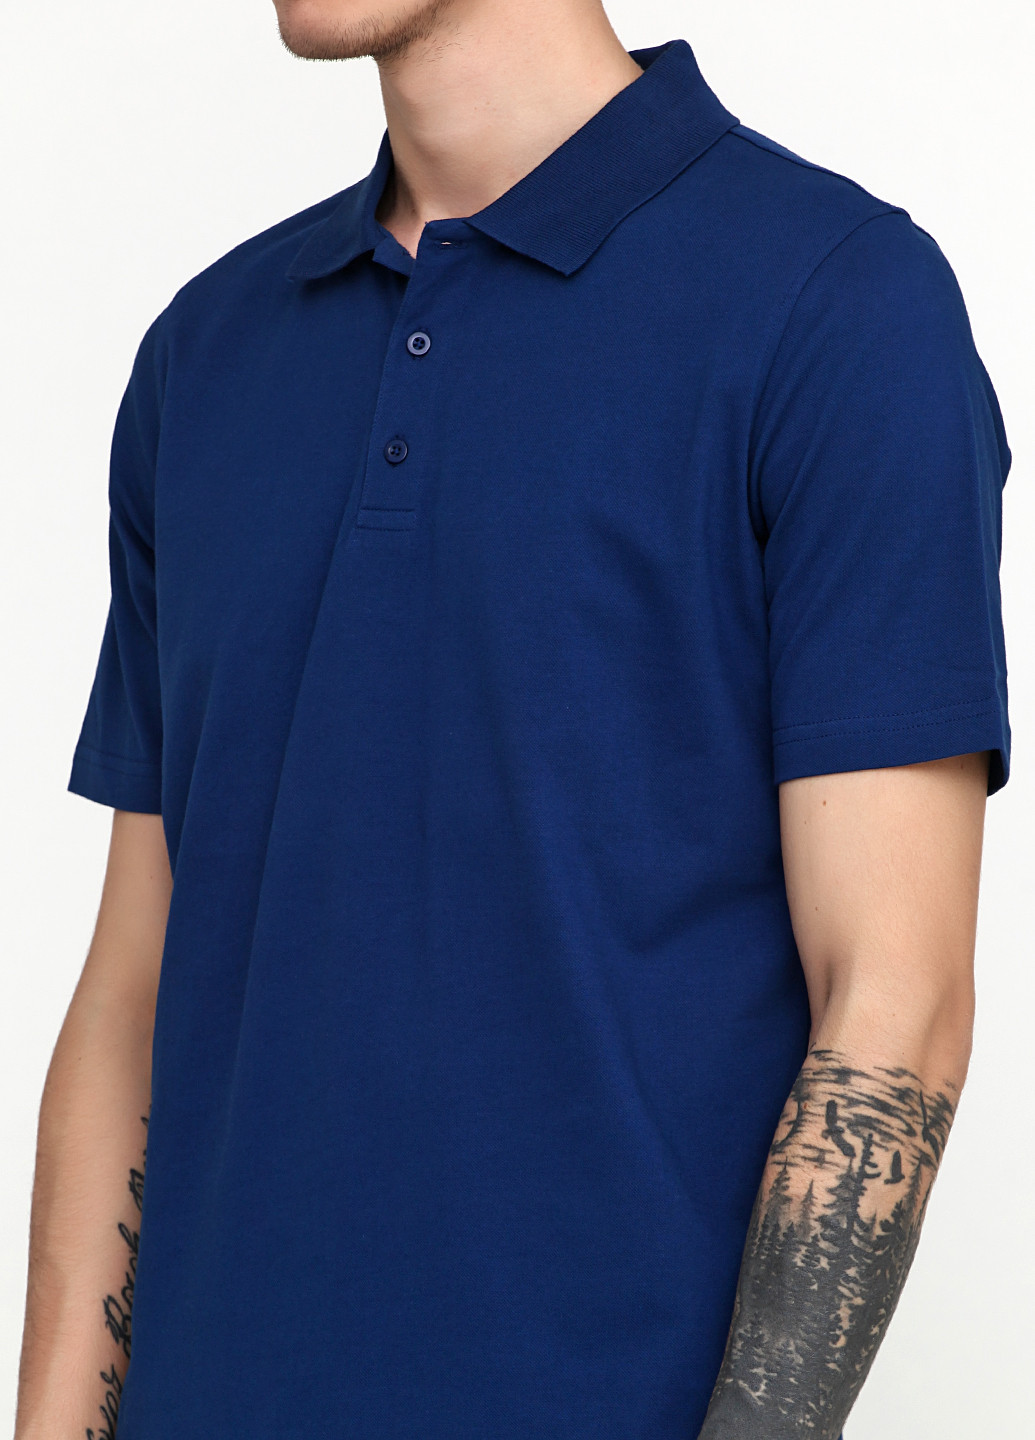 Синяя футболка-поло для мужчин Belika однотонная